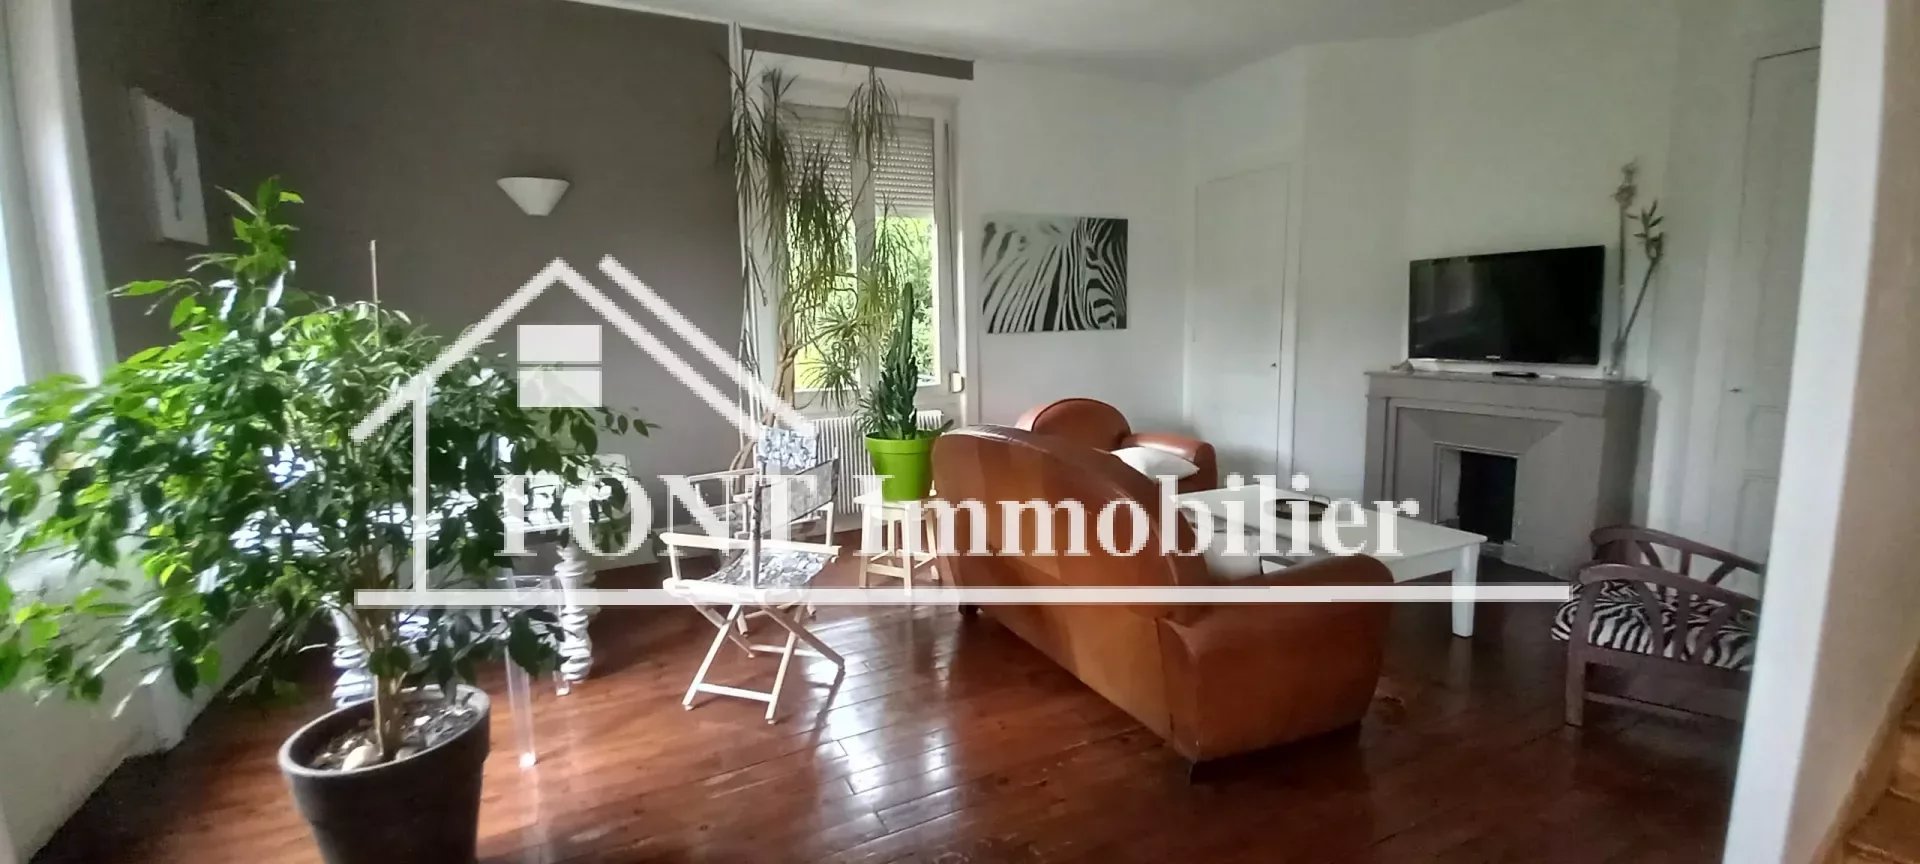 Vente Maison 110m² 5 Pièces à Saint-Chamond (42400) - Font Immobilier